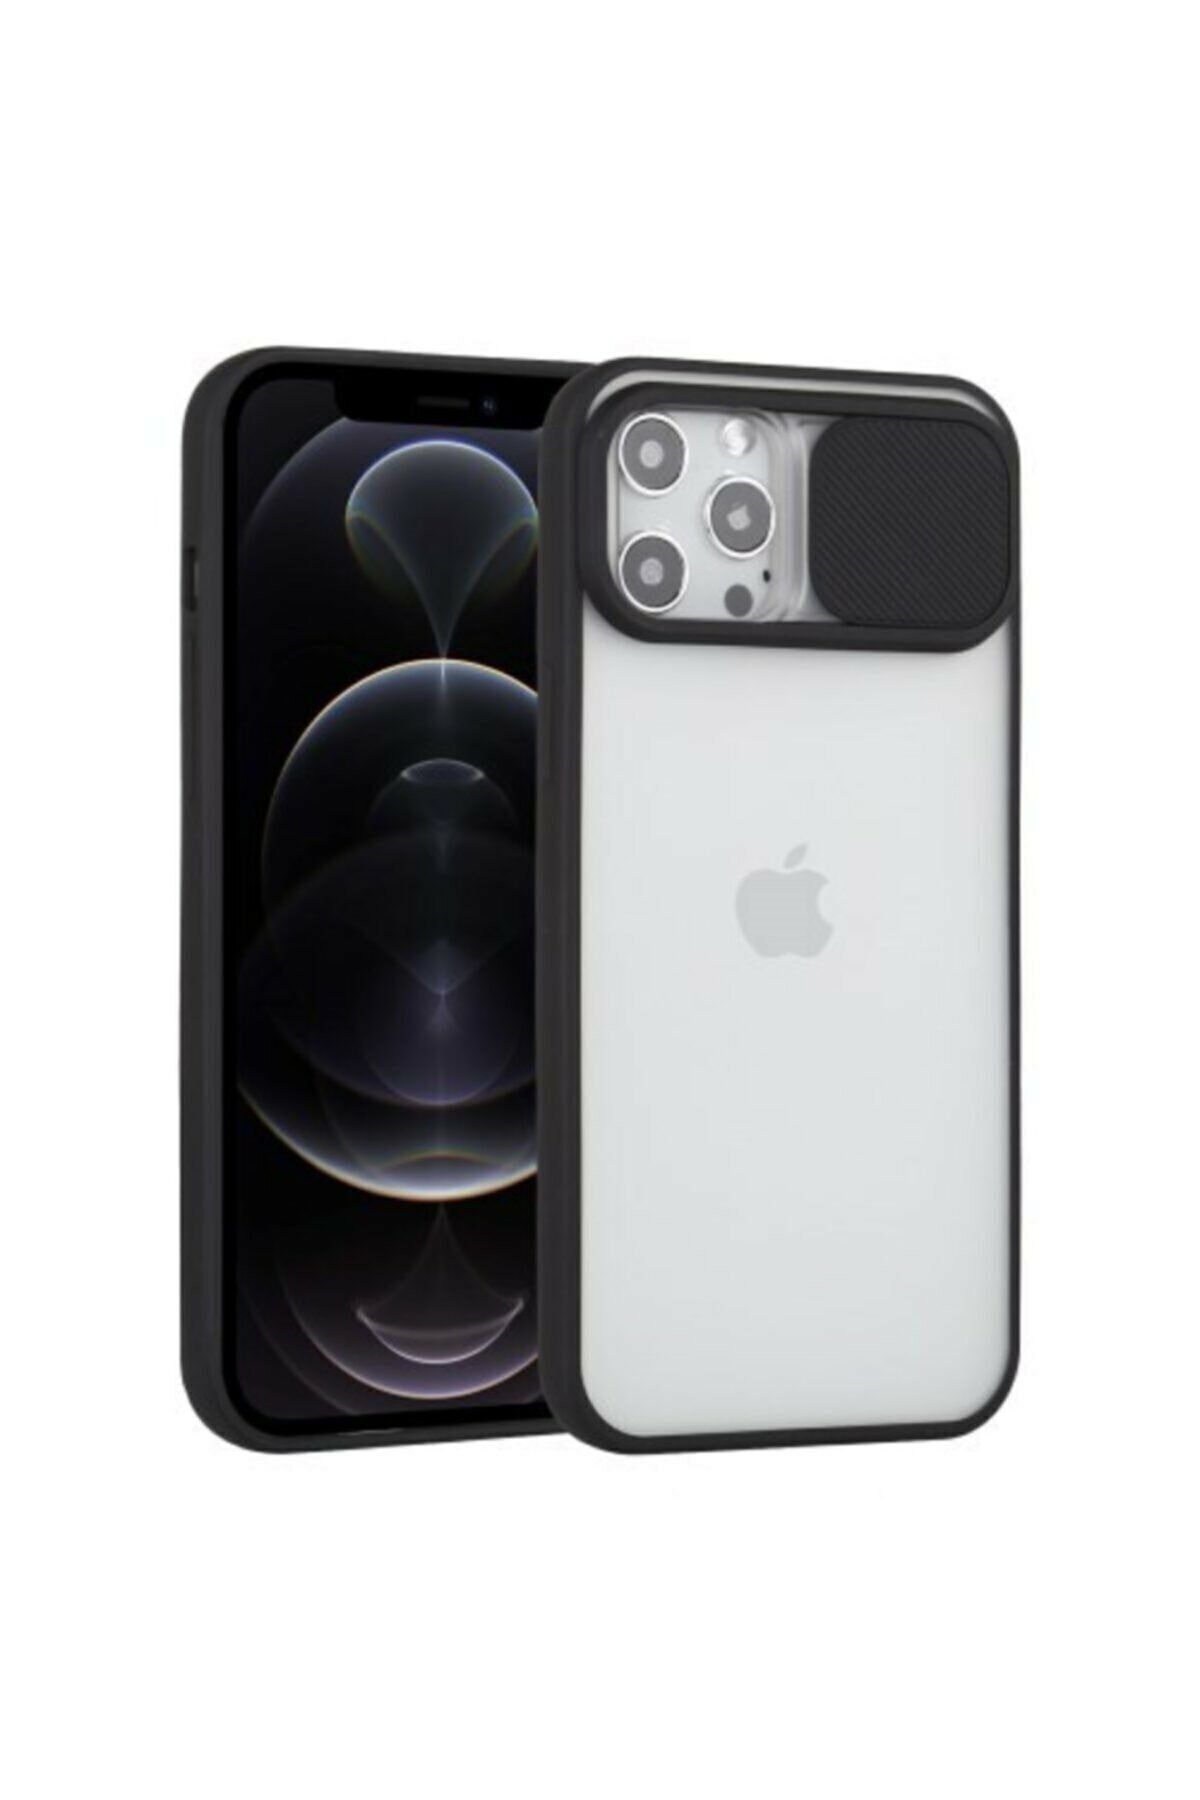 Bilişim Aksesuar Iphone 11 Pro Max 6.5" Uyumlu Kamera Lens Korumalı Sürgülü Kılıf